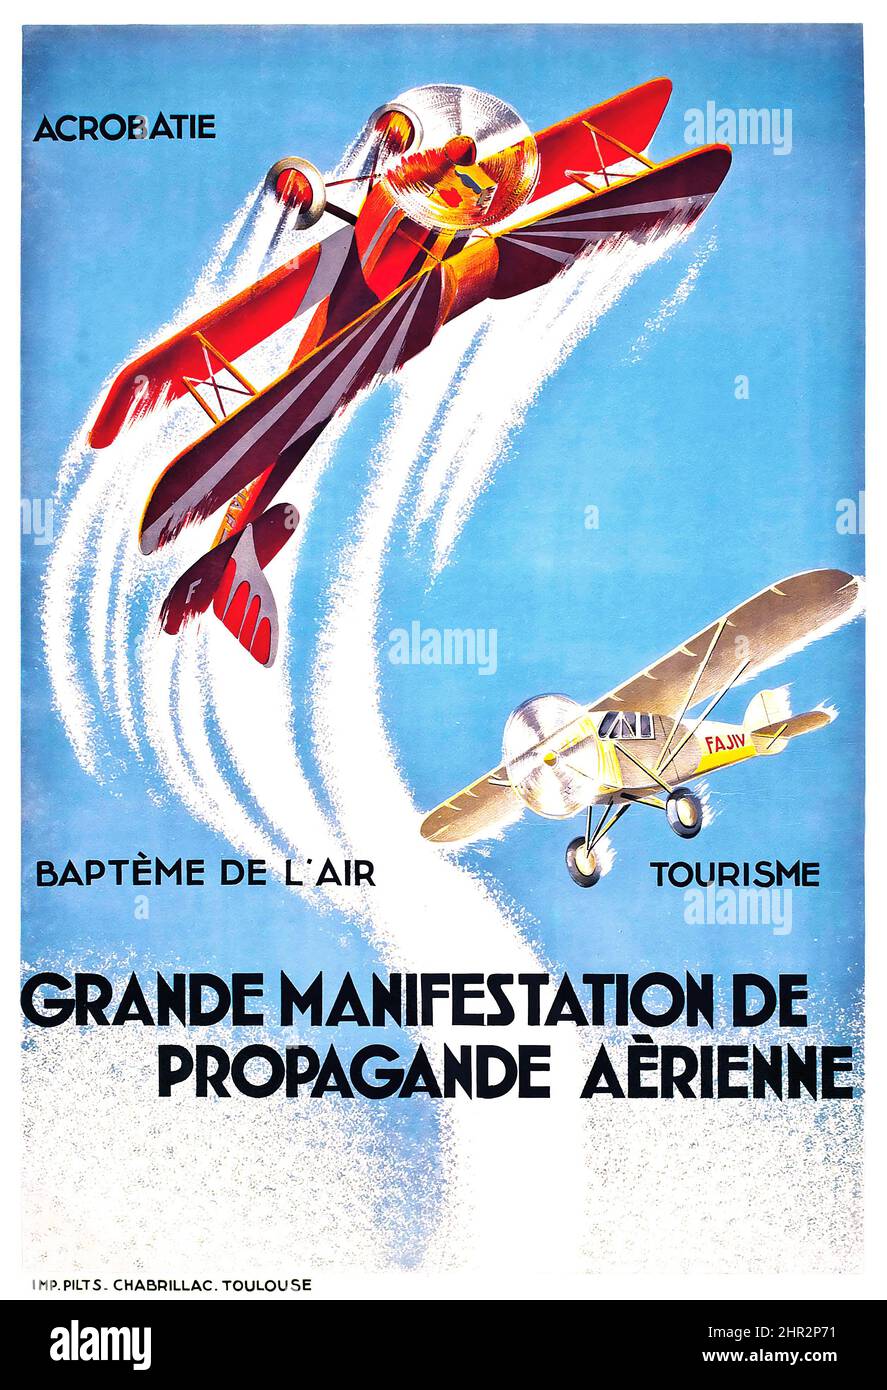 Artiste anonyme - GRANDE MANIFESTATION DE PROPAGANDE EYRIENNE, vers 1920, imprimé par Chabrillac, Toulouse. Affiche du salon de l'aviation. Banque D'Images